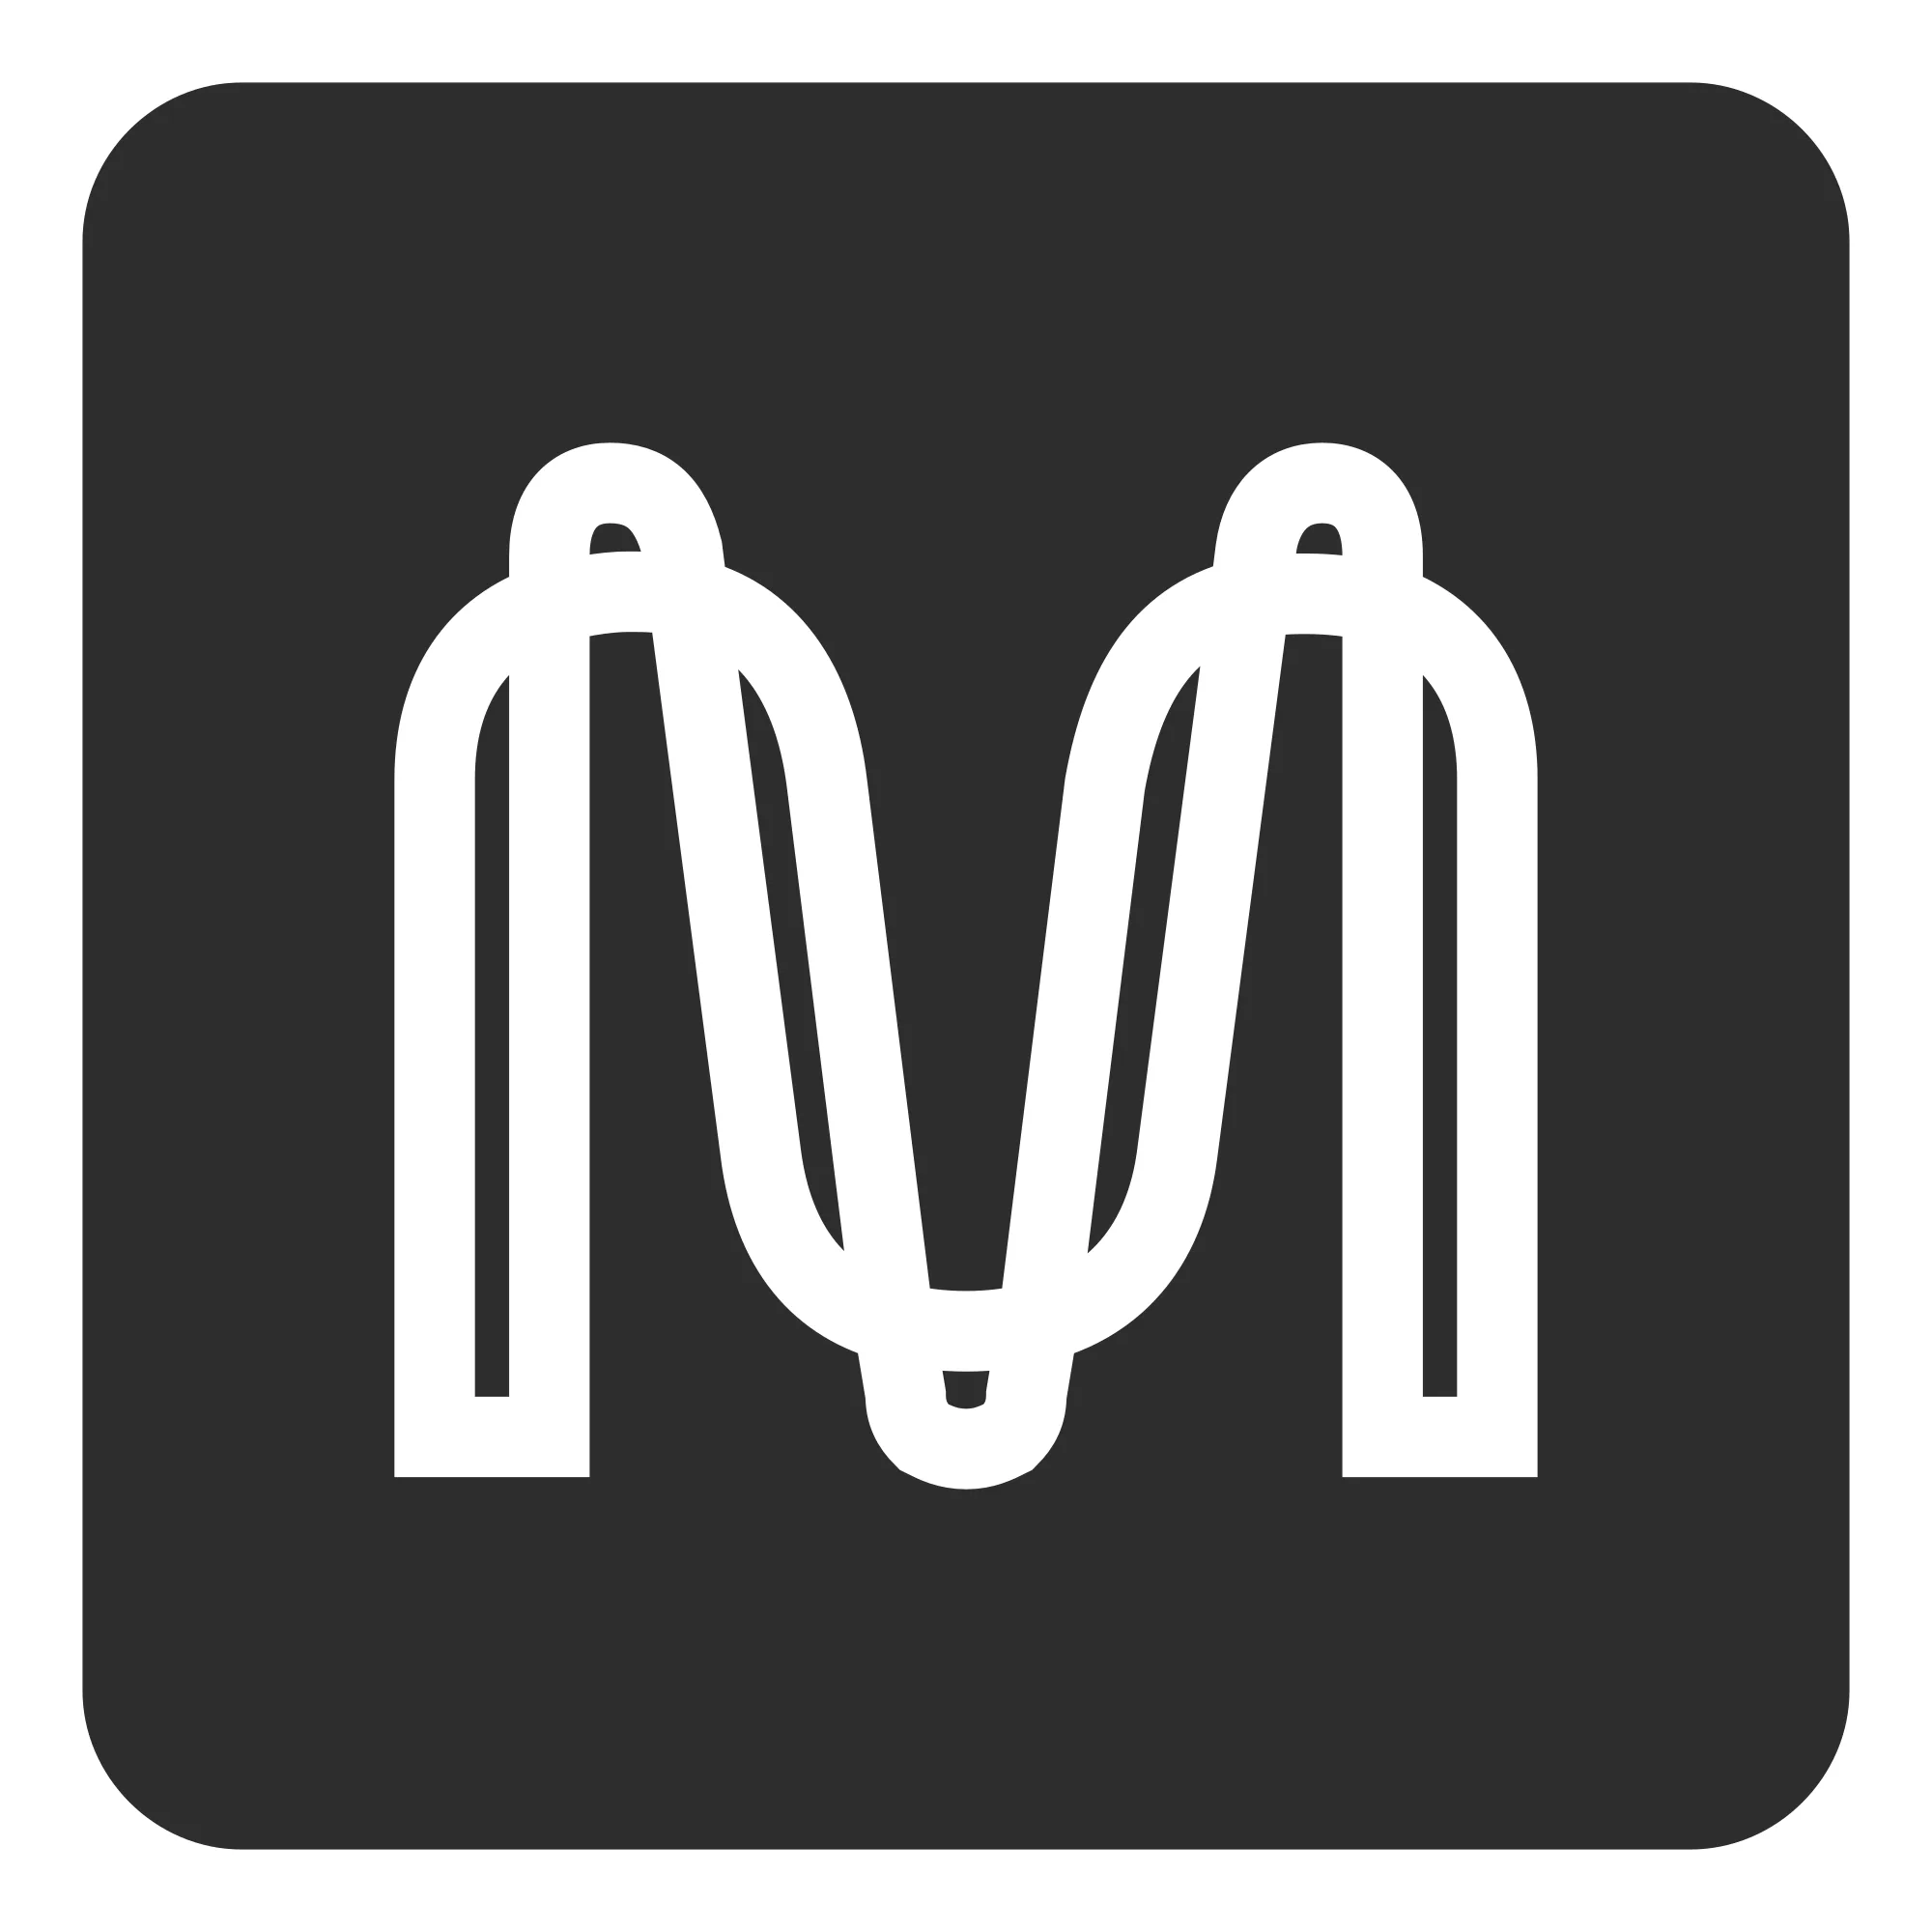 Mina (MINA) logo